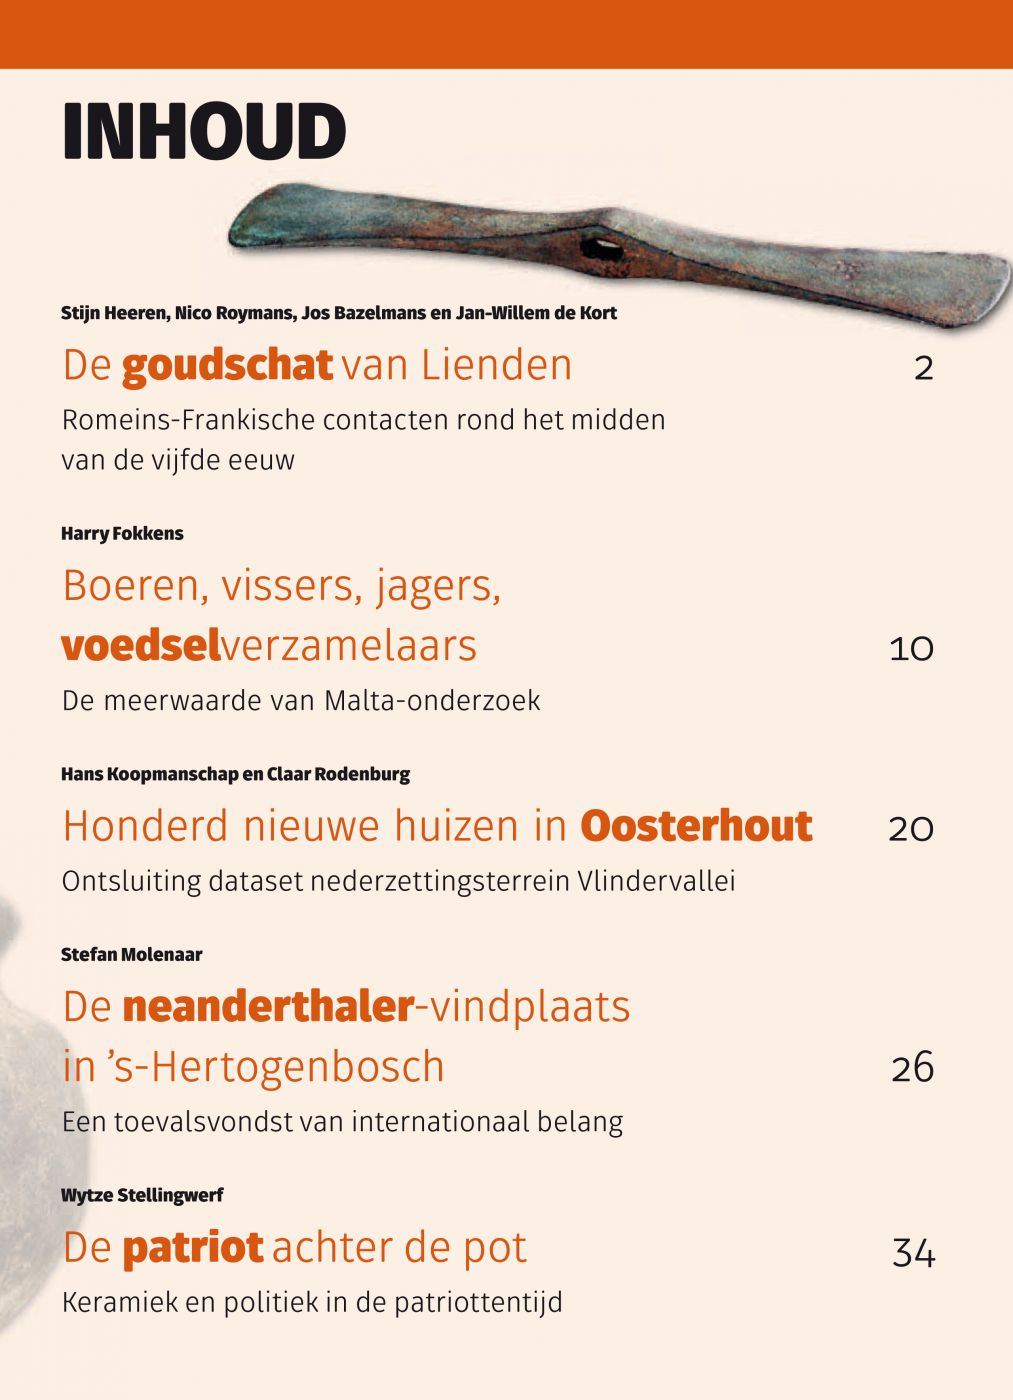 Inkijkexemplaar van het boek: <em>Archeologie in Nederland</em> - © Uitgeverij Matrijs